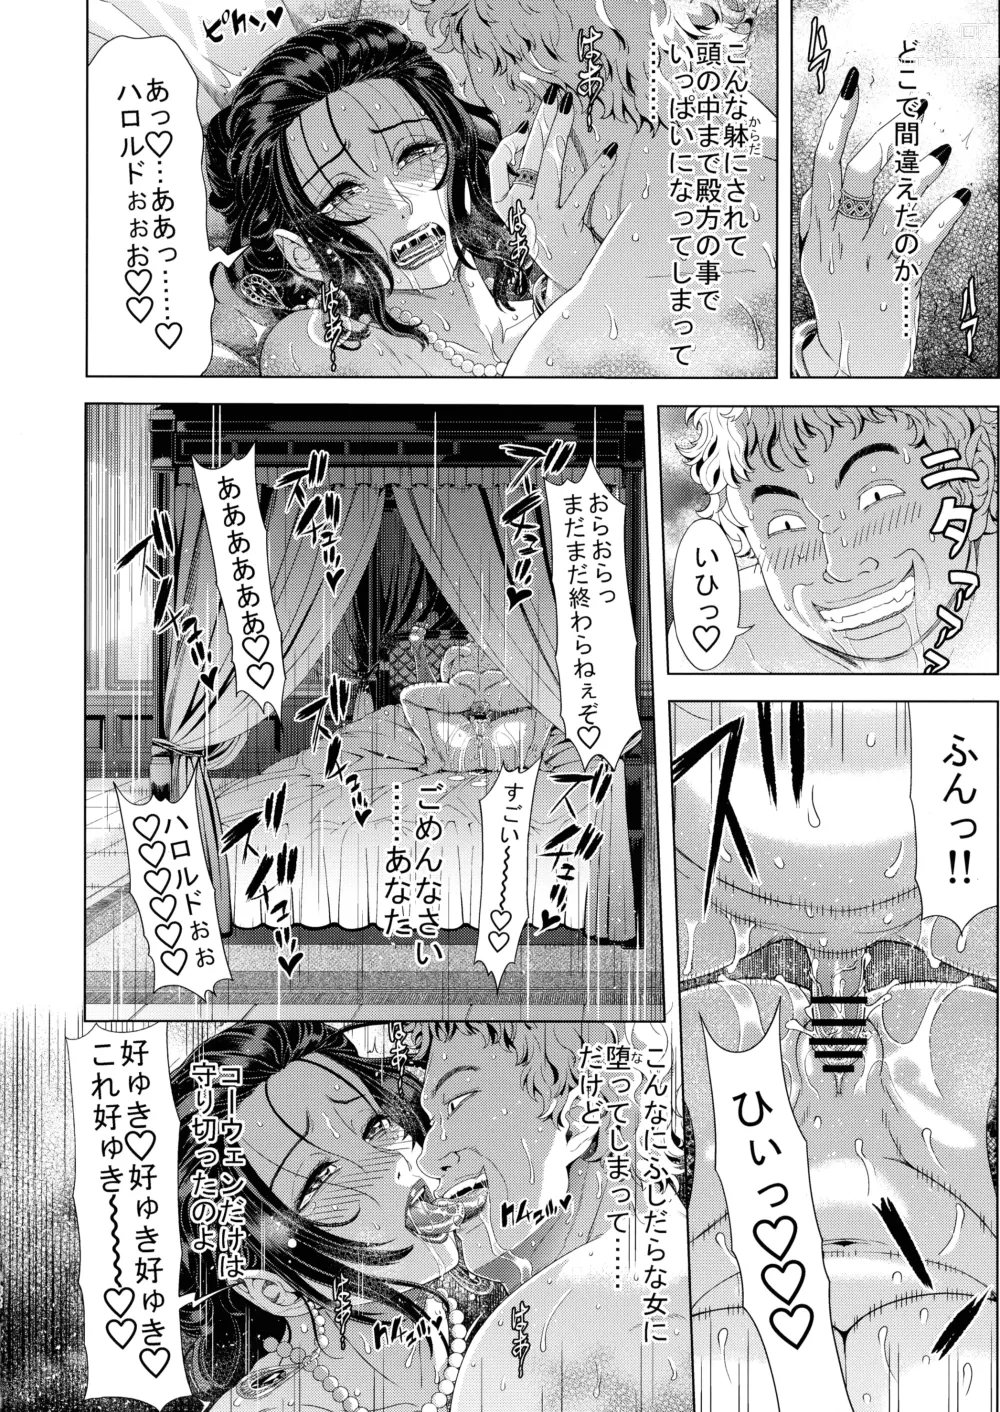 Page 32 of doujinshi Kyouki no Oukoku San no Shou